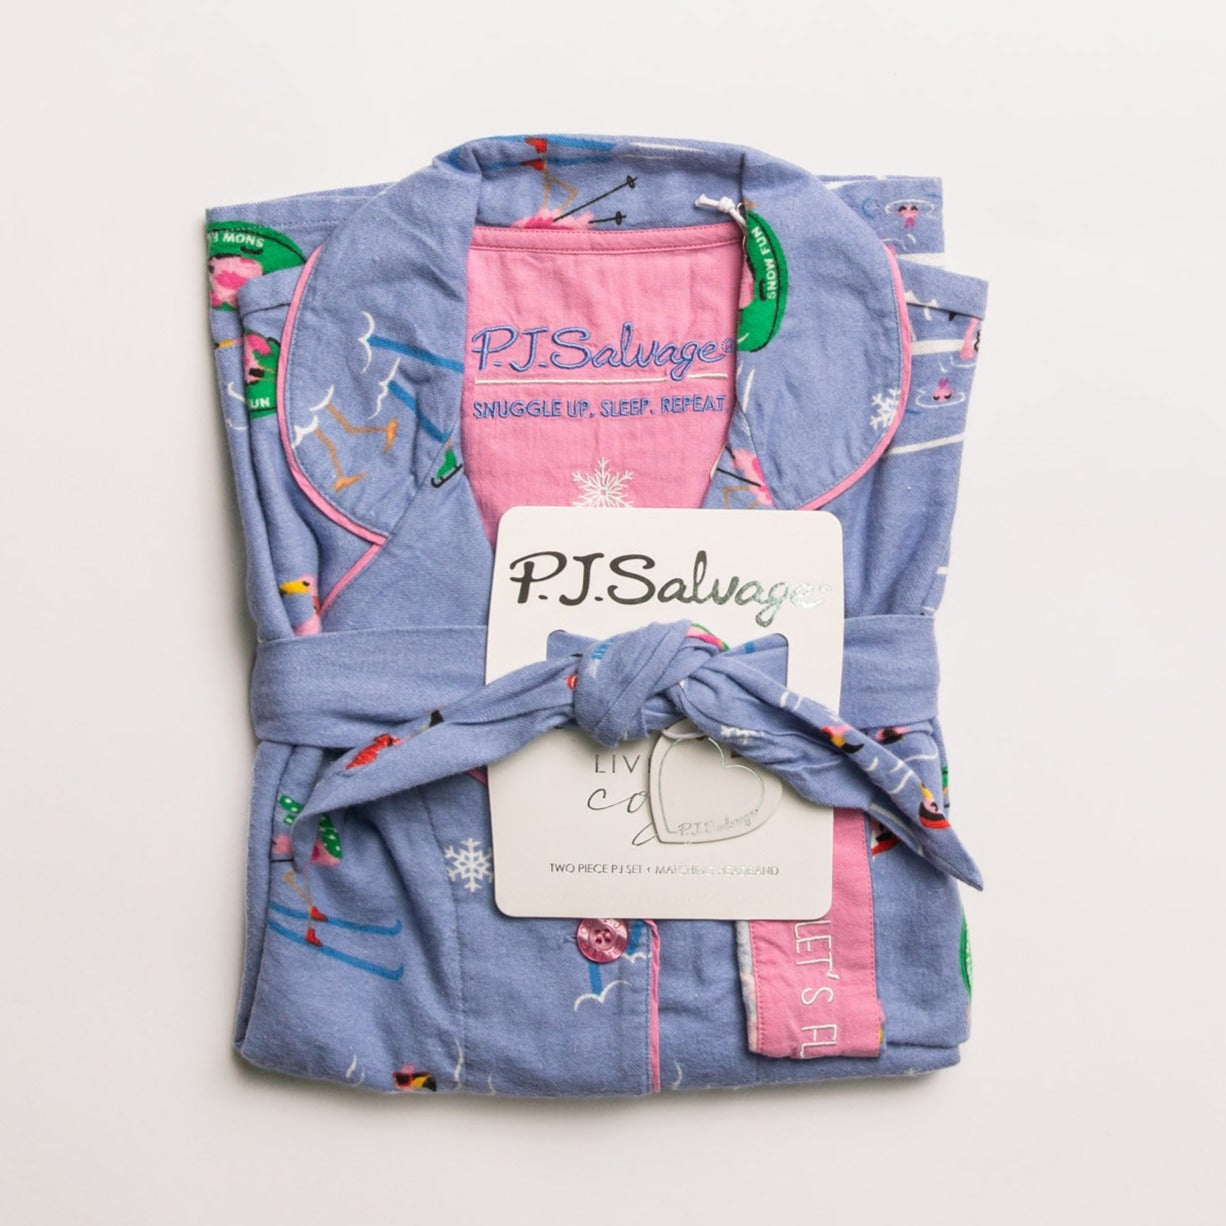 Flannel Pajama Sets - RKFLPJ Sleep & Lounge - Sleep - Pajamas P.J. Salvage BLUE S 